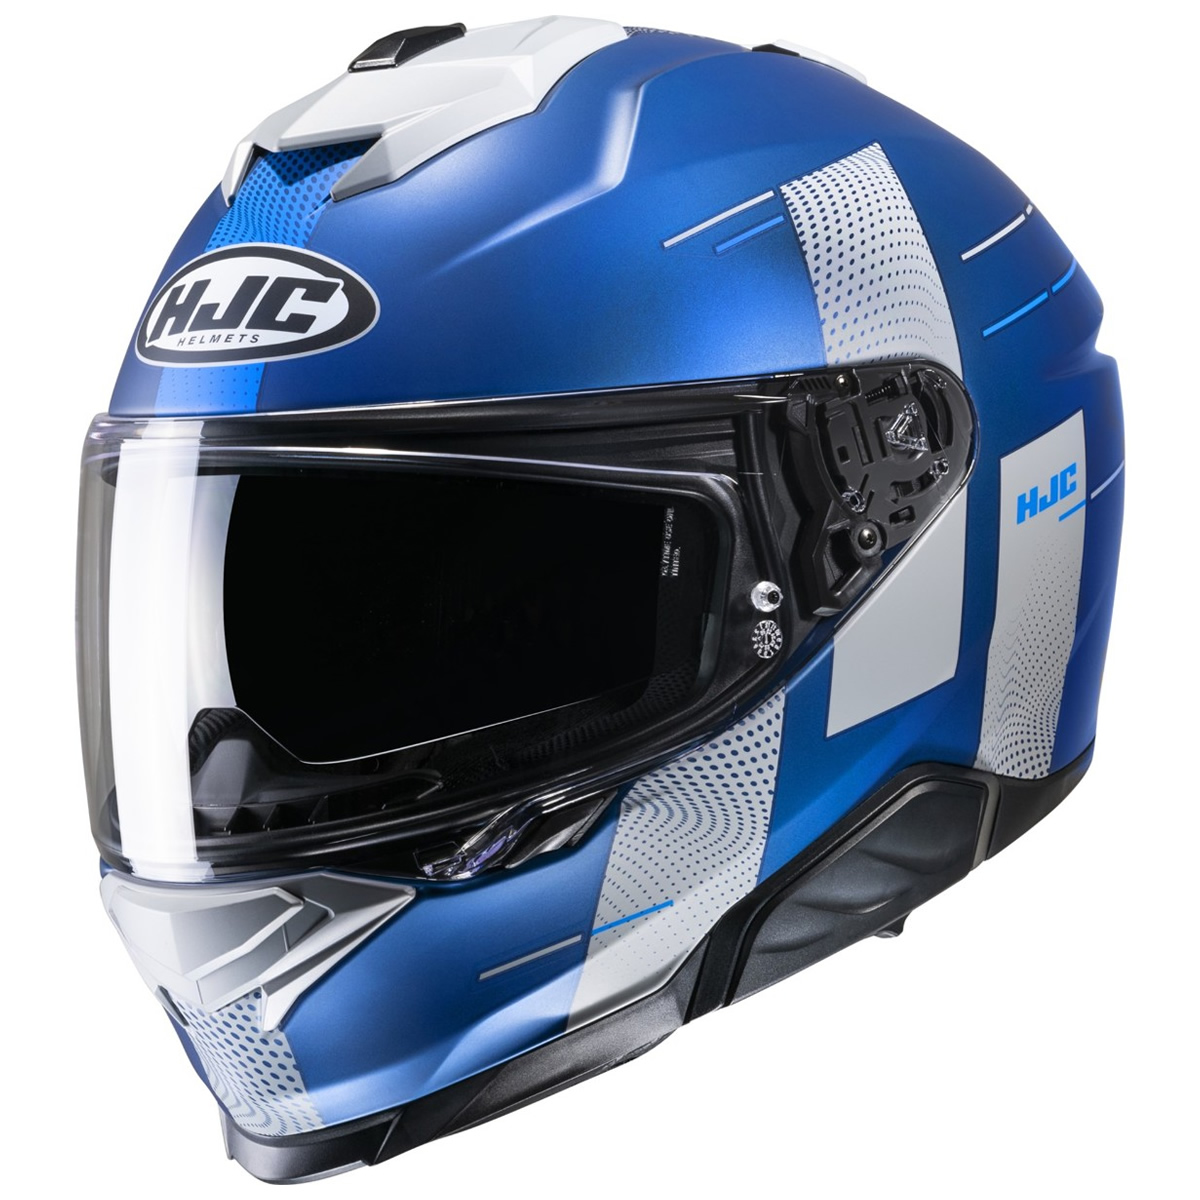 HJC Helm i71 Peka, blau-grau matt